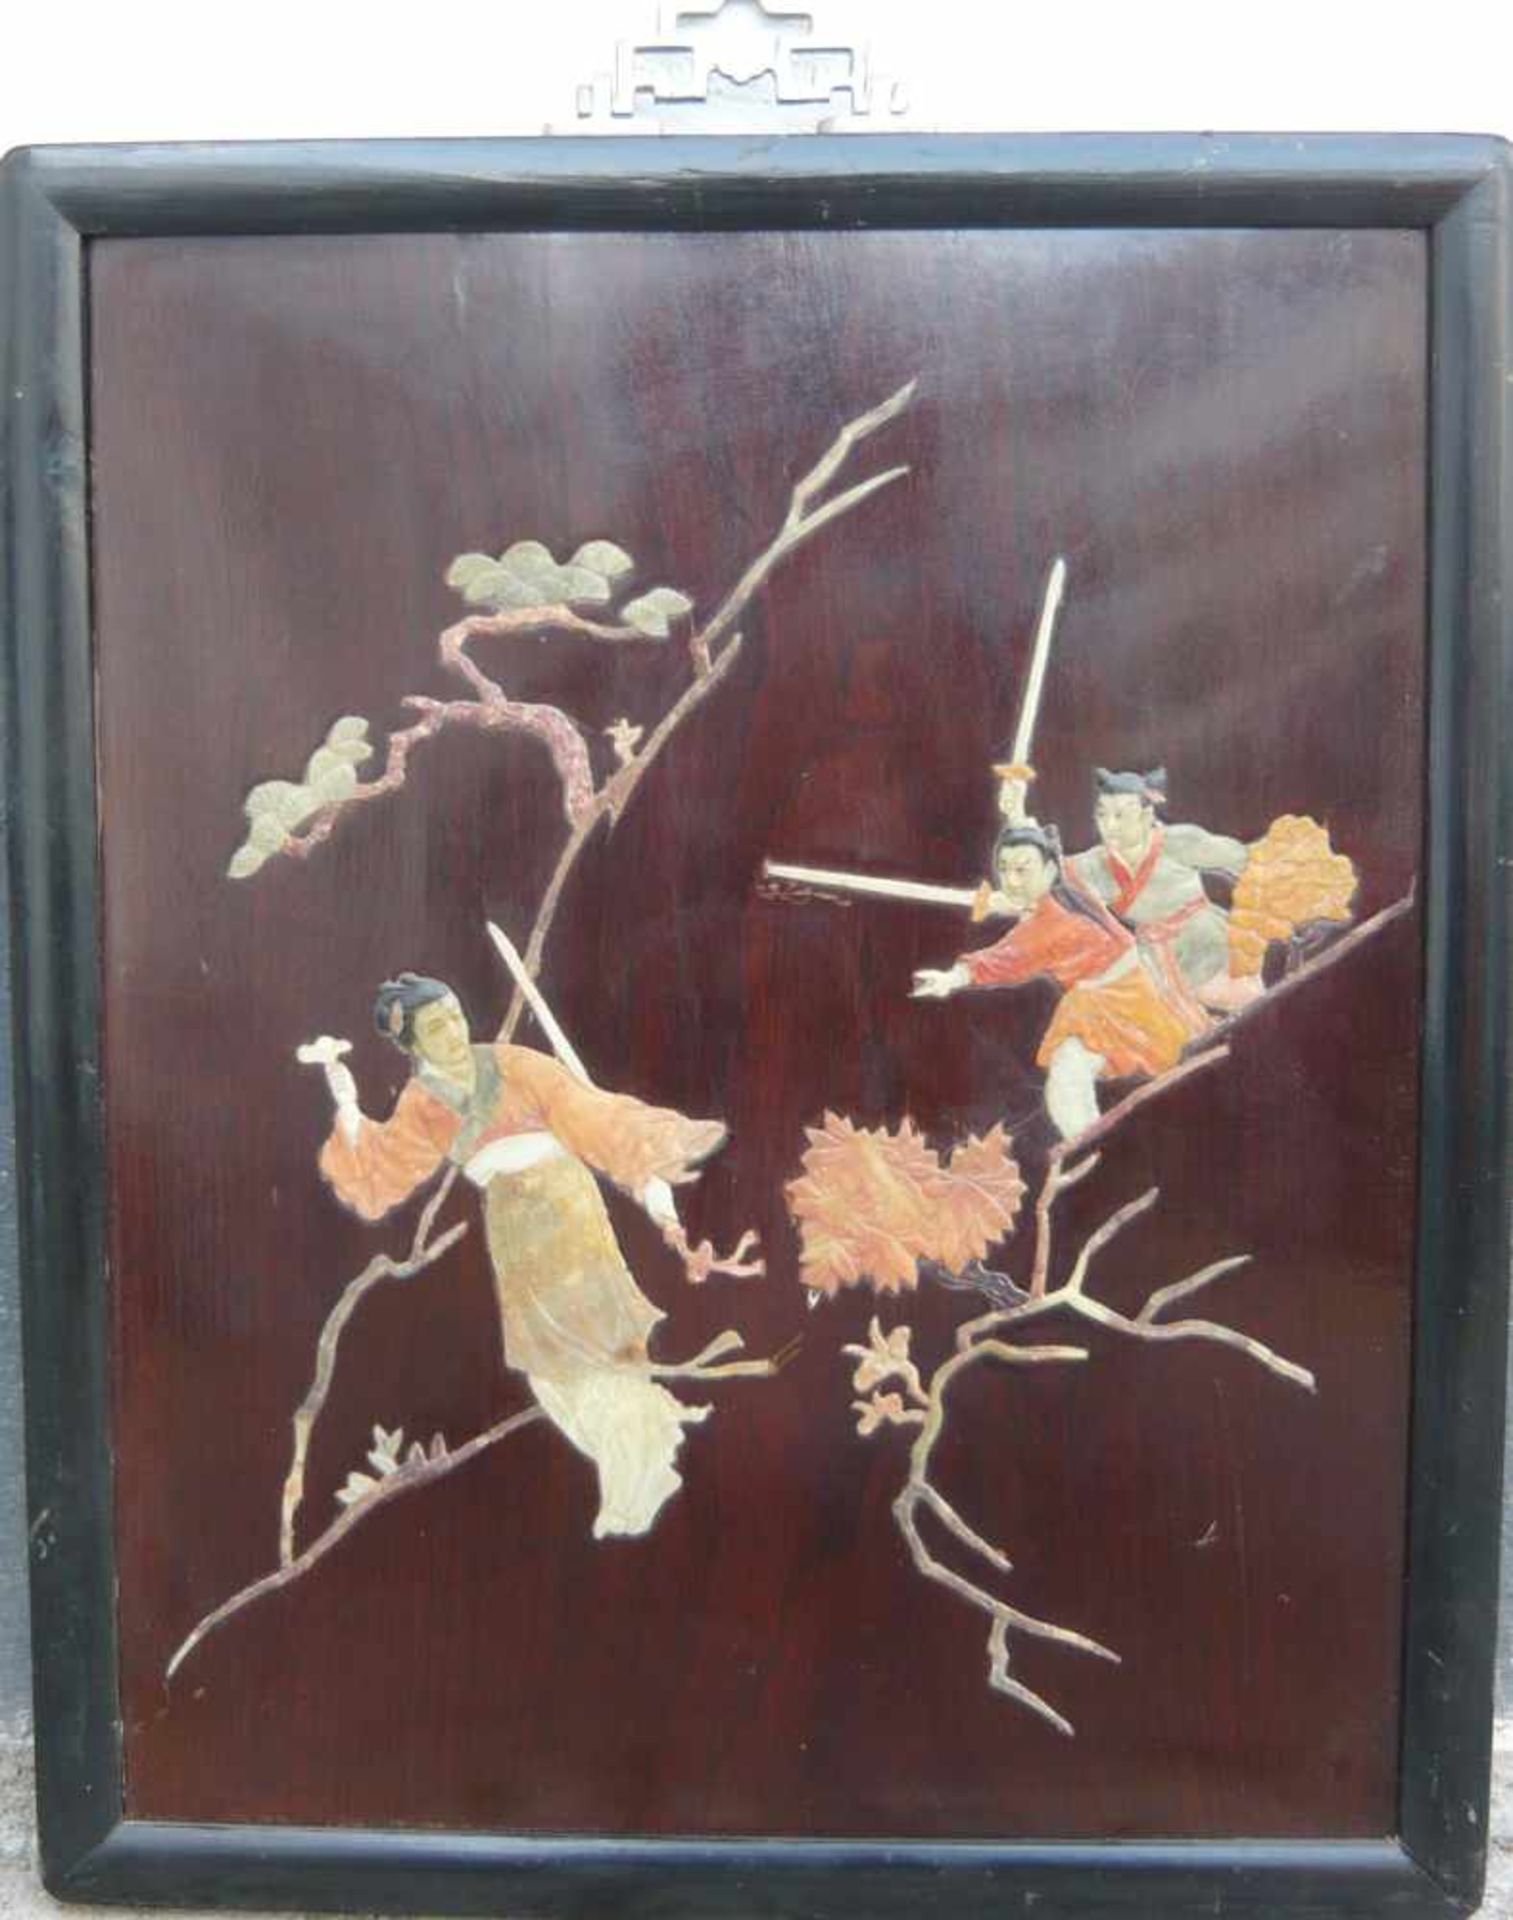 Chinesisches Wandbild mit Schwertkämpferszene. Speckstein u. andere Edelsteine/Holz. Wohl um 1900.